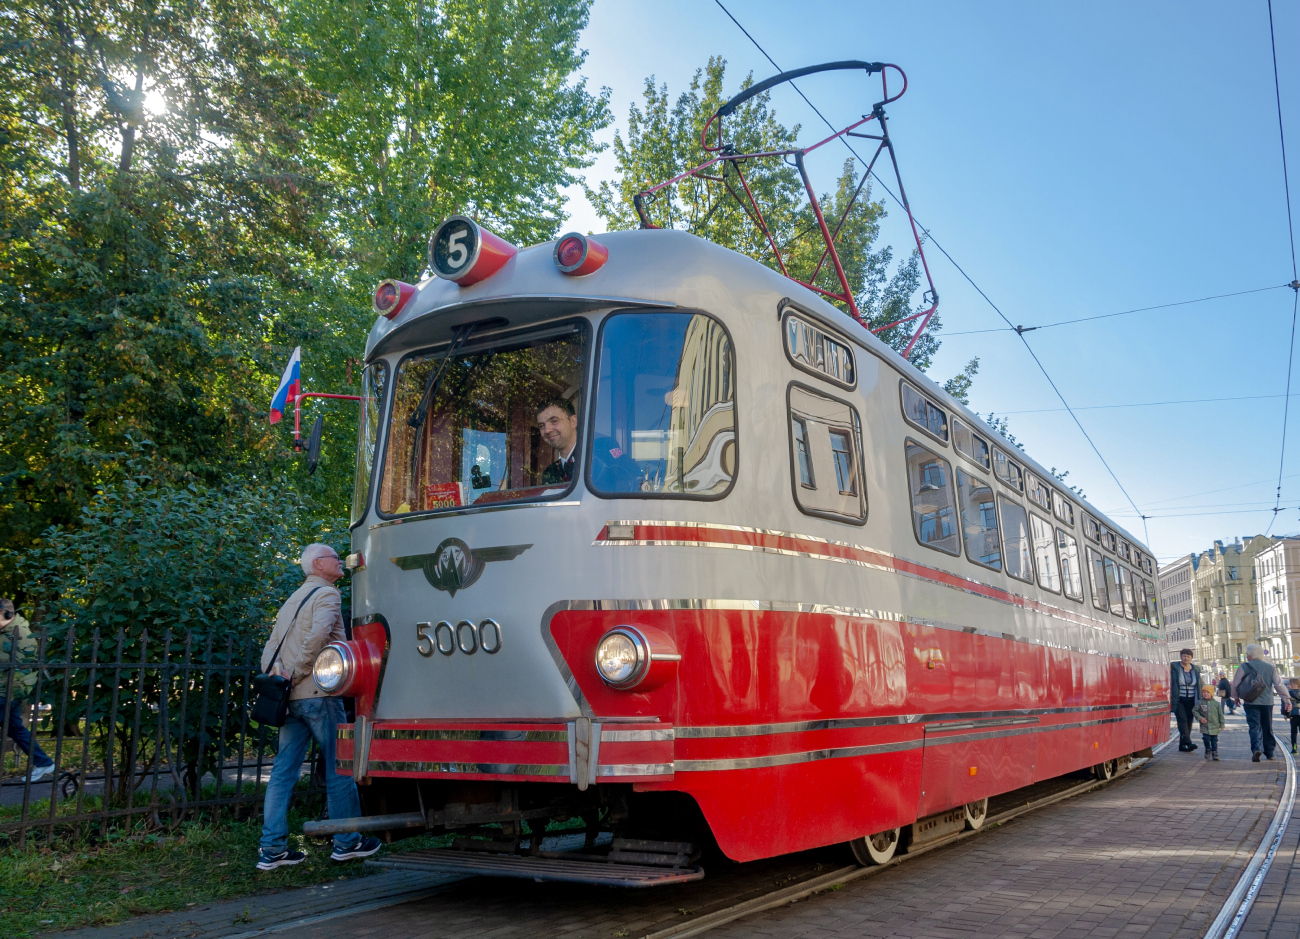 Санкт-Петербург, ТС-76 № 5000; Санкт-Петербург — Выставка вагонов на 115-летие трамвая